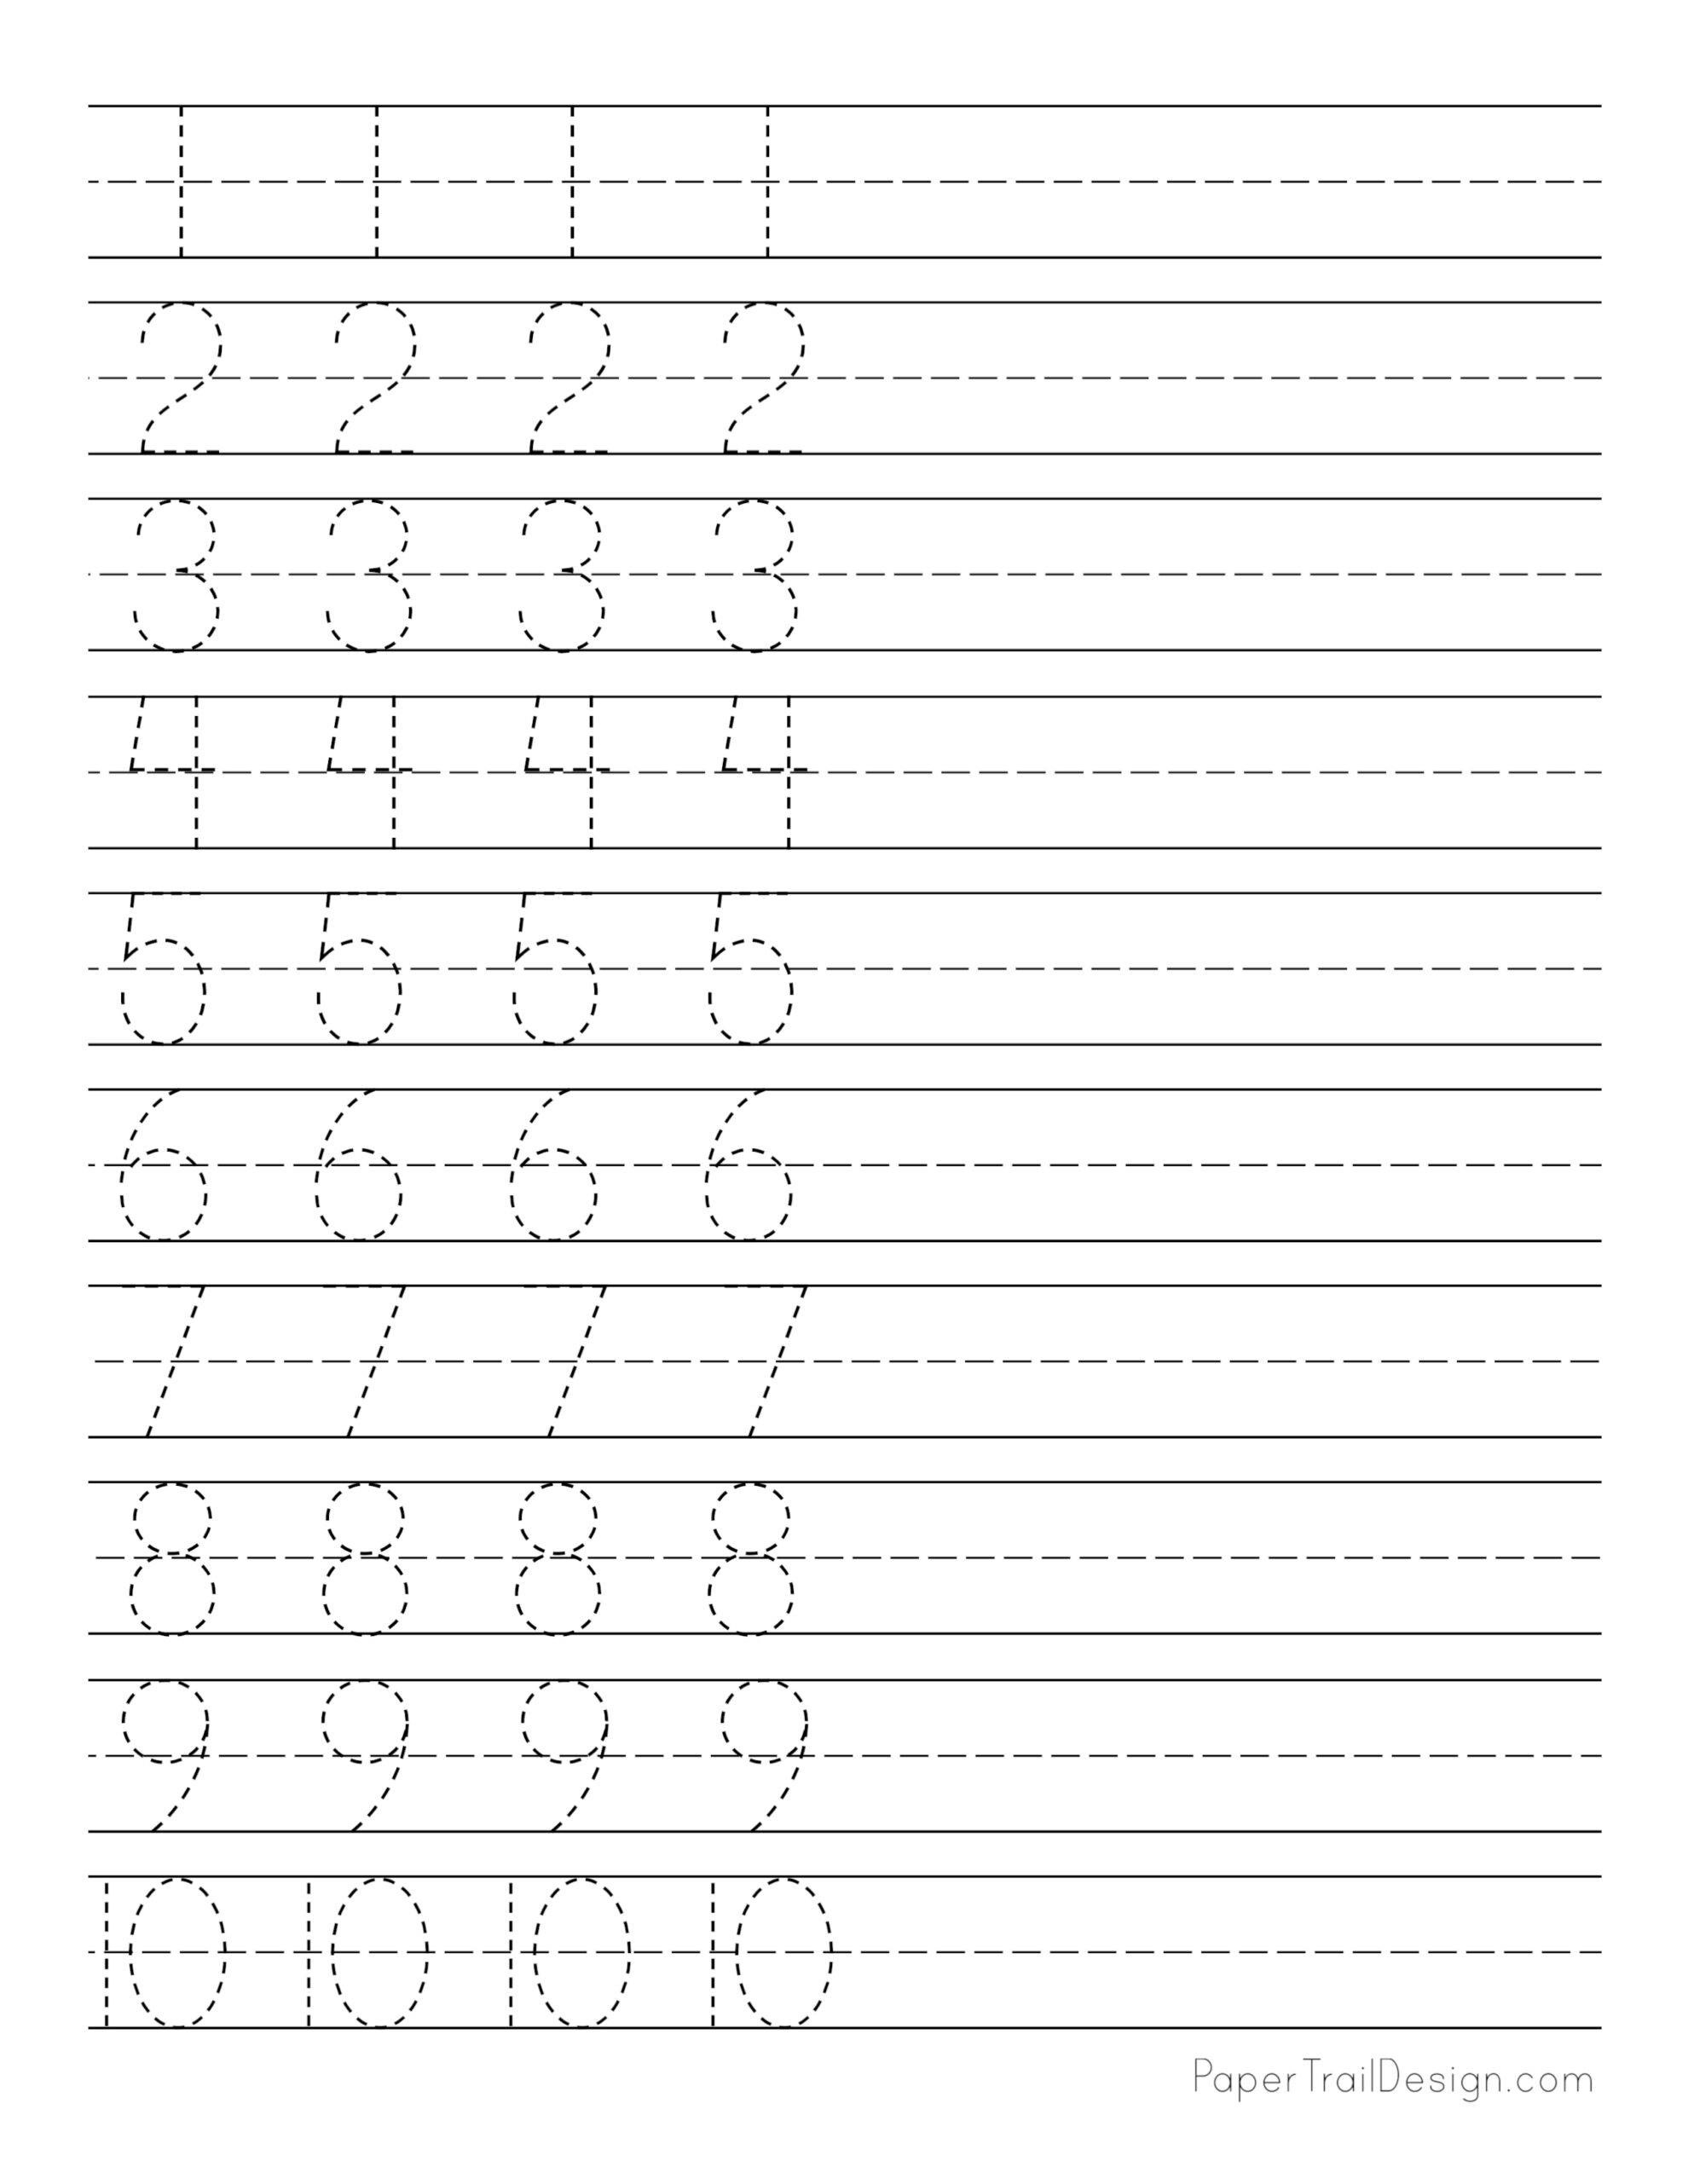 writing-numbers-worksheet-1-10